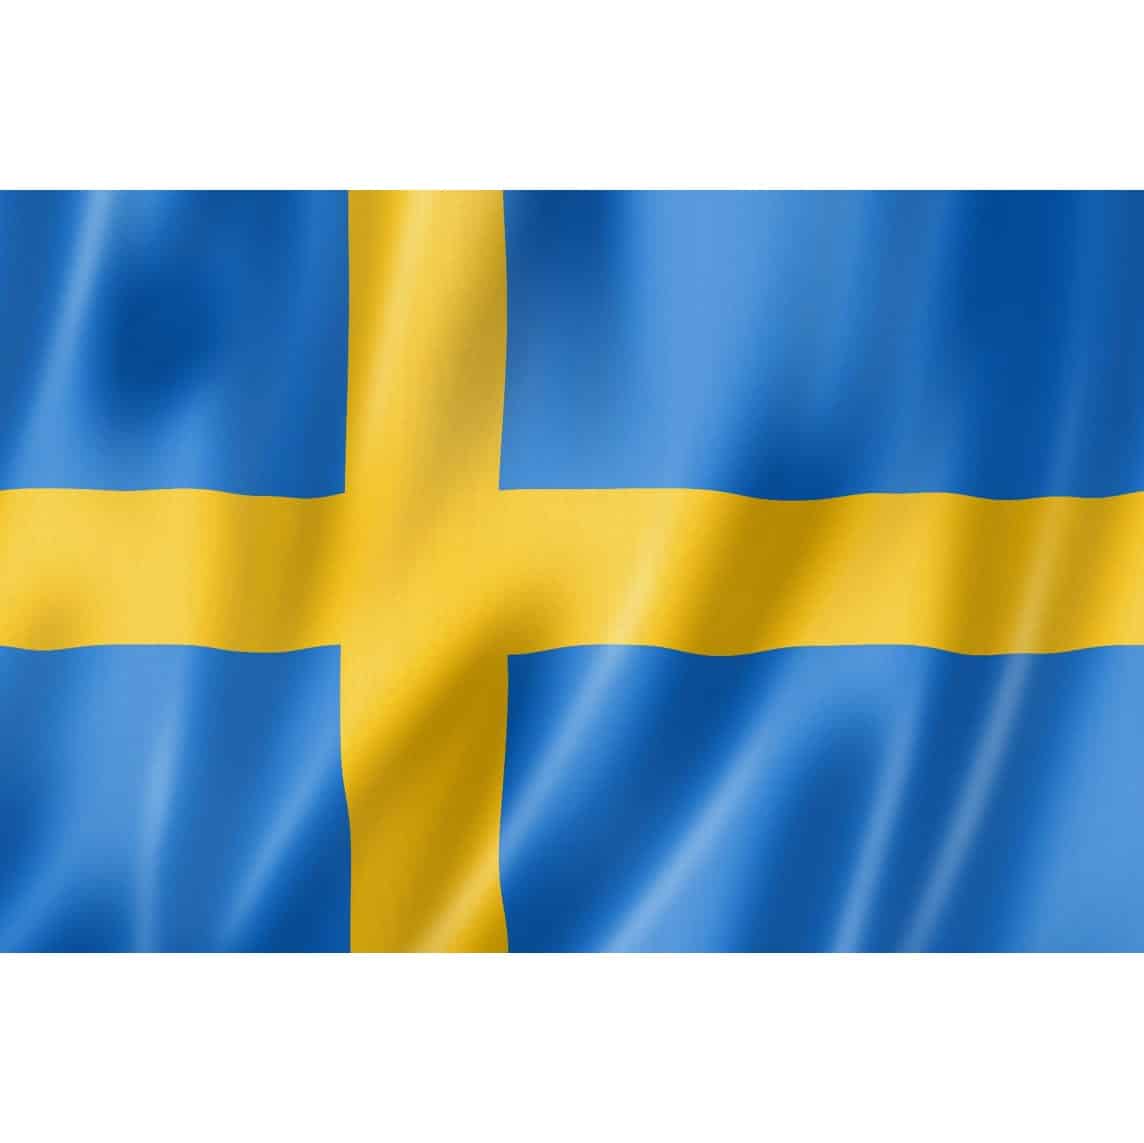 Die Flagge Schwedens als Symbolbild für die Einsatz der digitalen Krone von der Schwedischen Zentralbank.